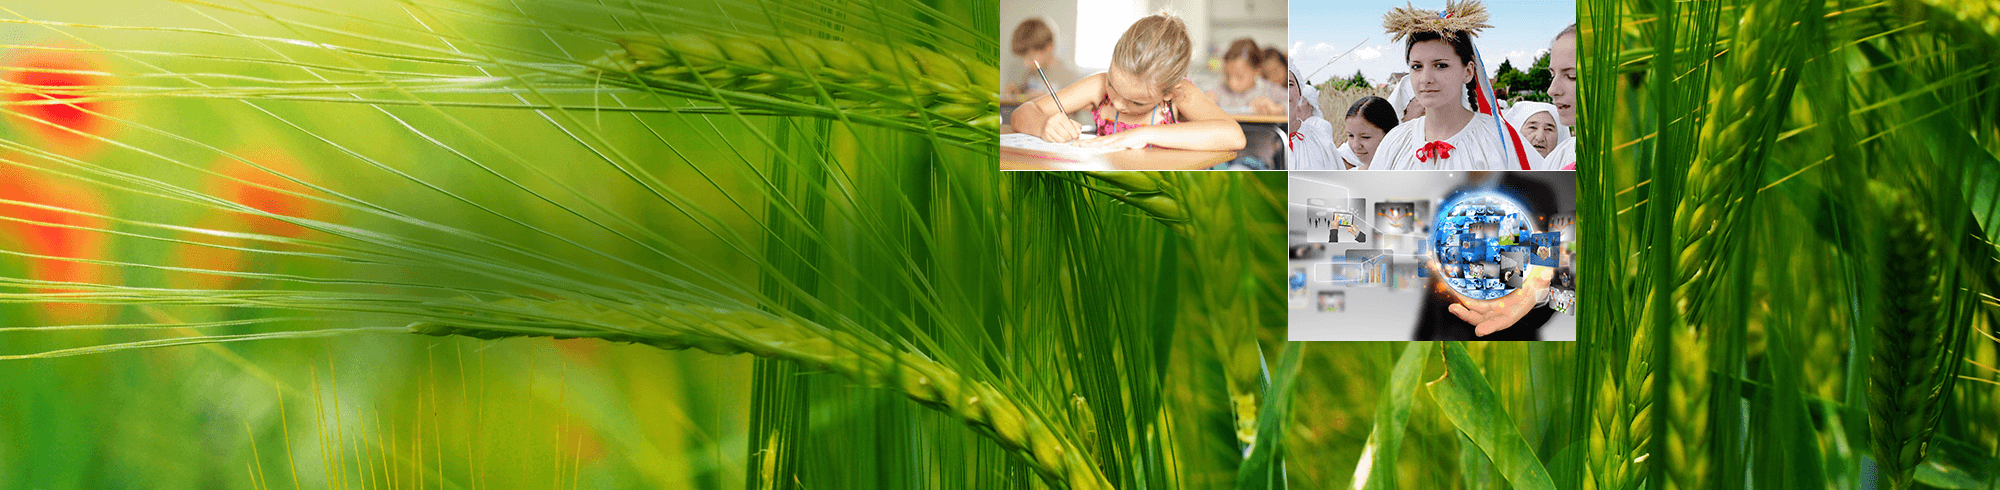 BBŽ - Zelena oaza zdravlja, znanja,<br />
tradicijskih vrijednosti i pravih prilika